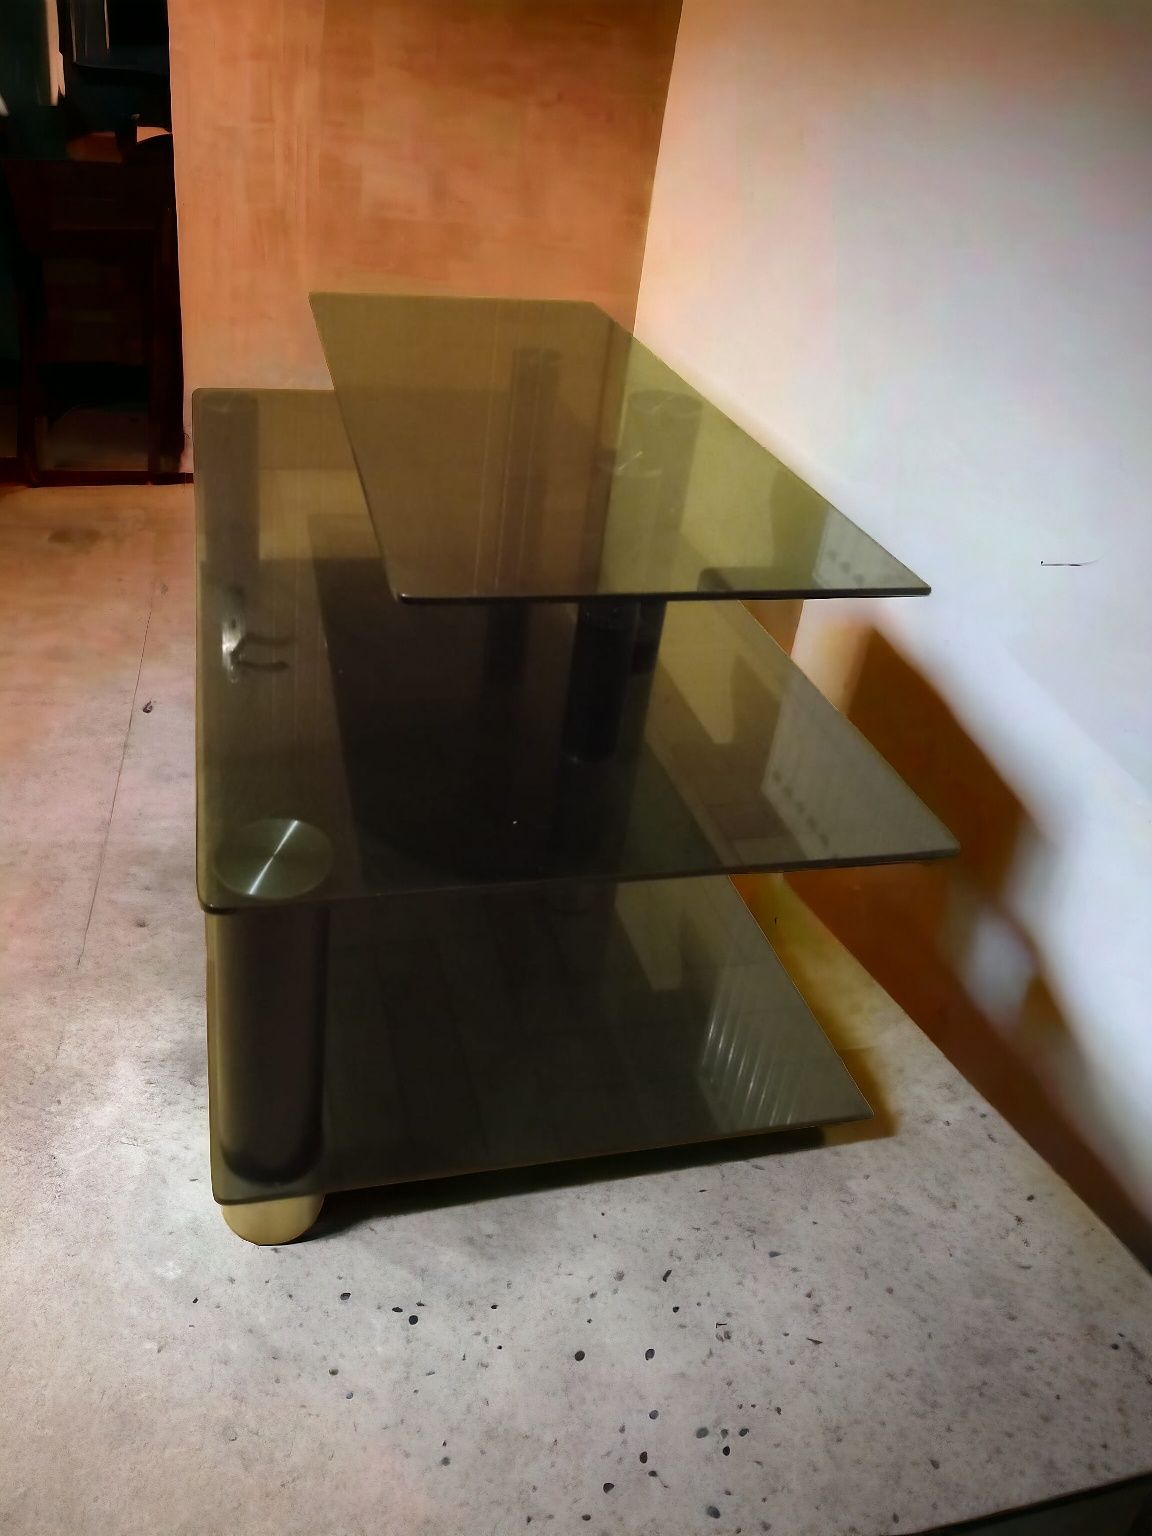 Szklanych stolik pod telewizor